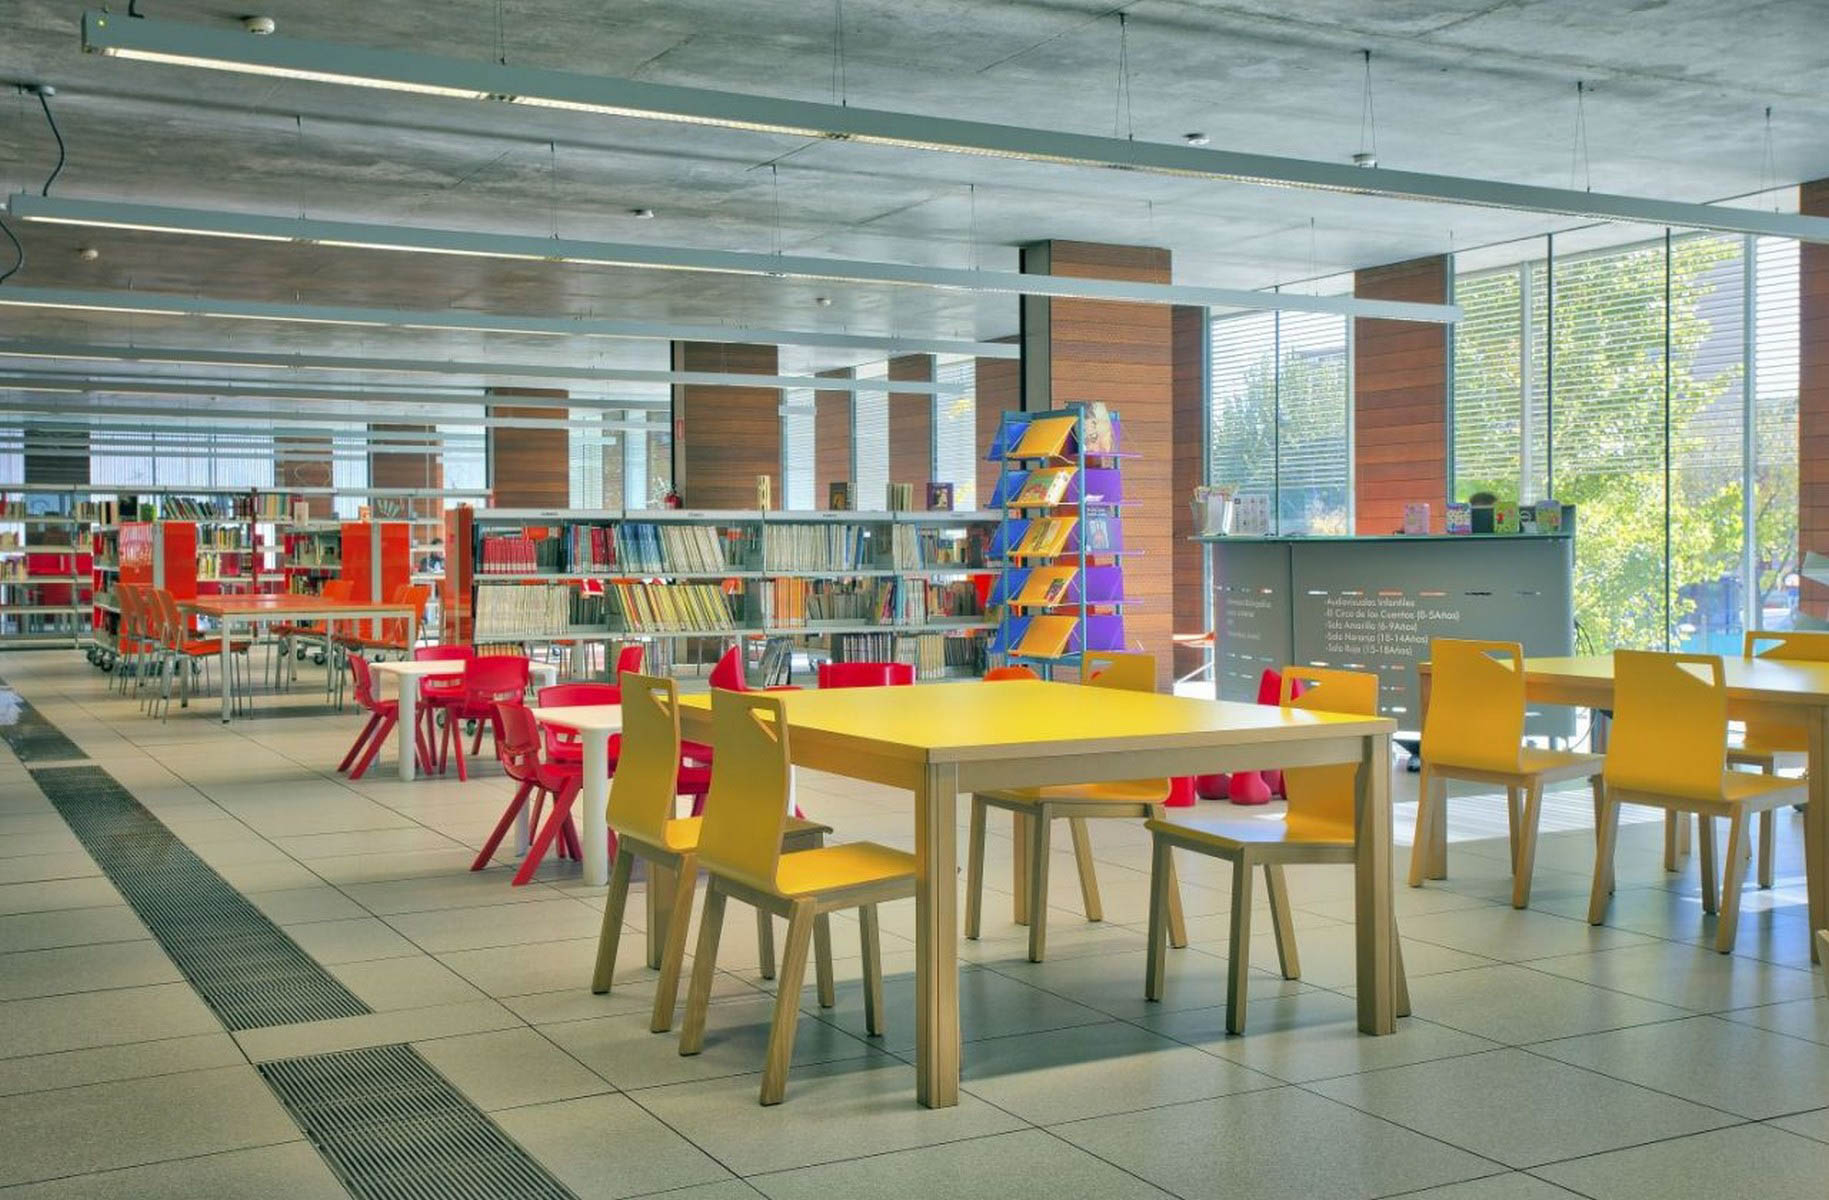 METALUNDIA BRECHT   table qui apporte une touche chaleureuse et conviviale à nos bibliothèques grâce à sa structure en bois, bien qu’elle puisse s’adapter aussi bien aux décors classiques qu’aux installations contemporaines, grâce à la variété de couleurs avec lesquelles nous pouvons jouer sur ses couvertures